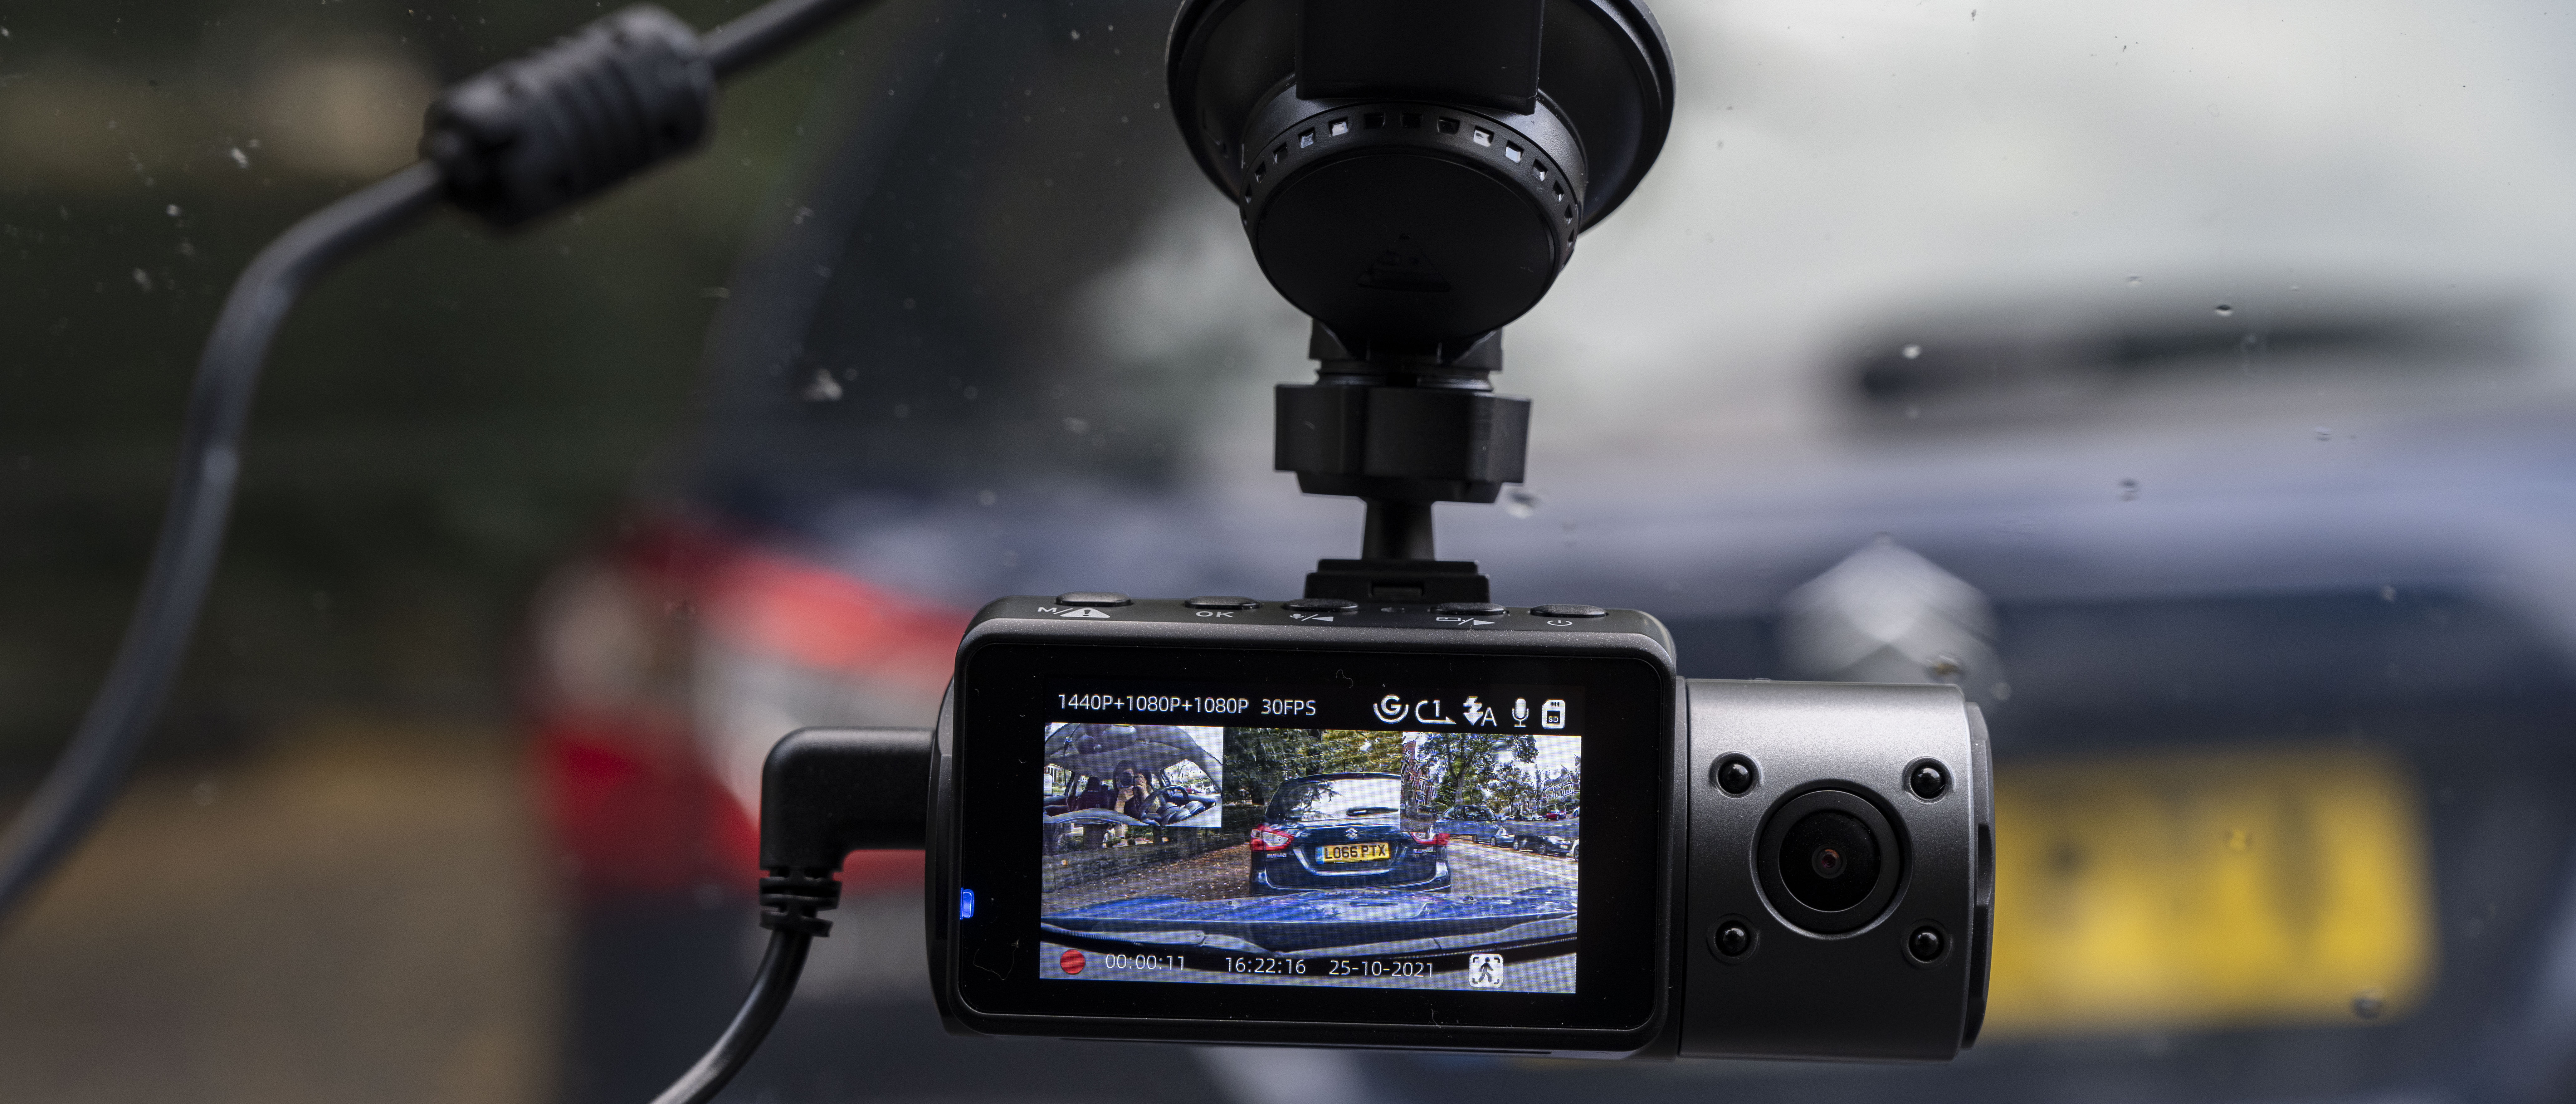 Vantrue N4 dashcam review | Digital Camera World